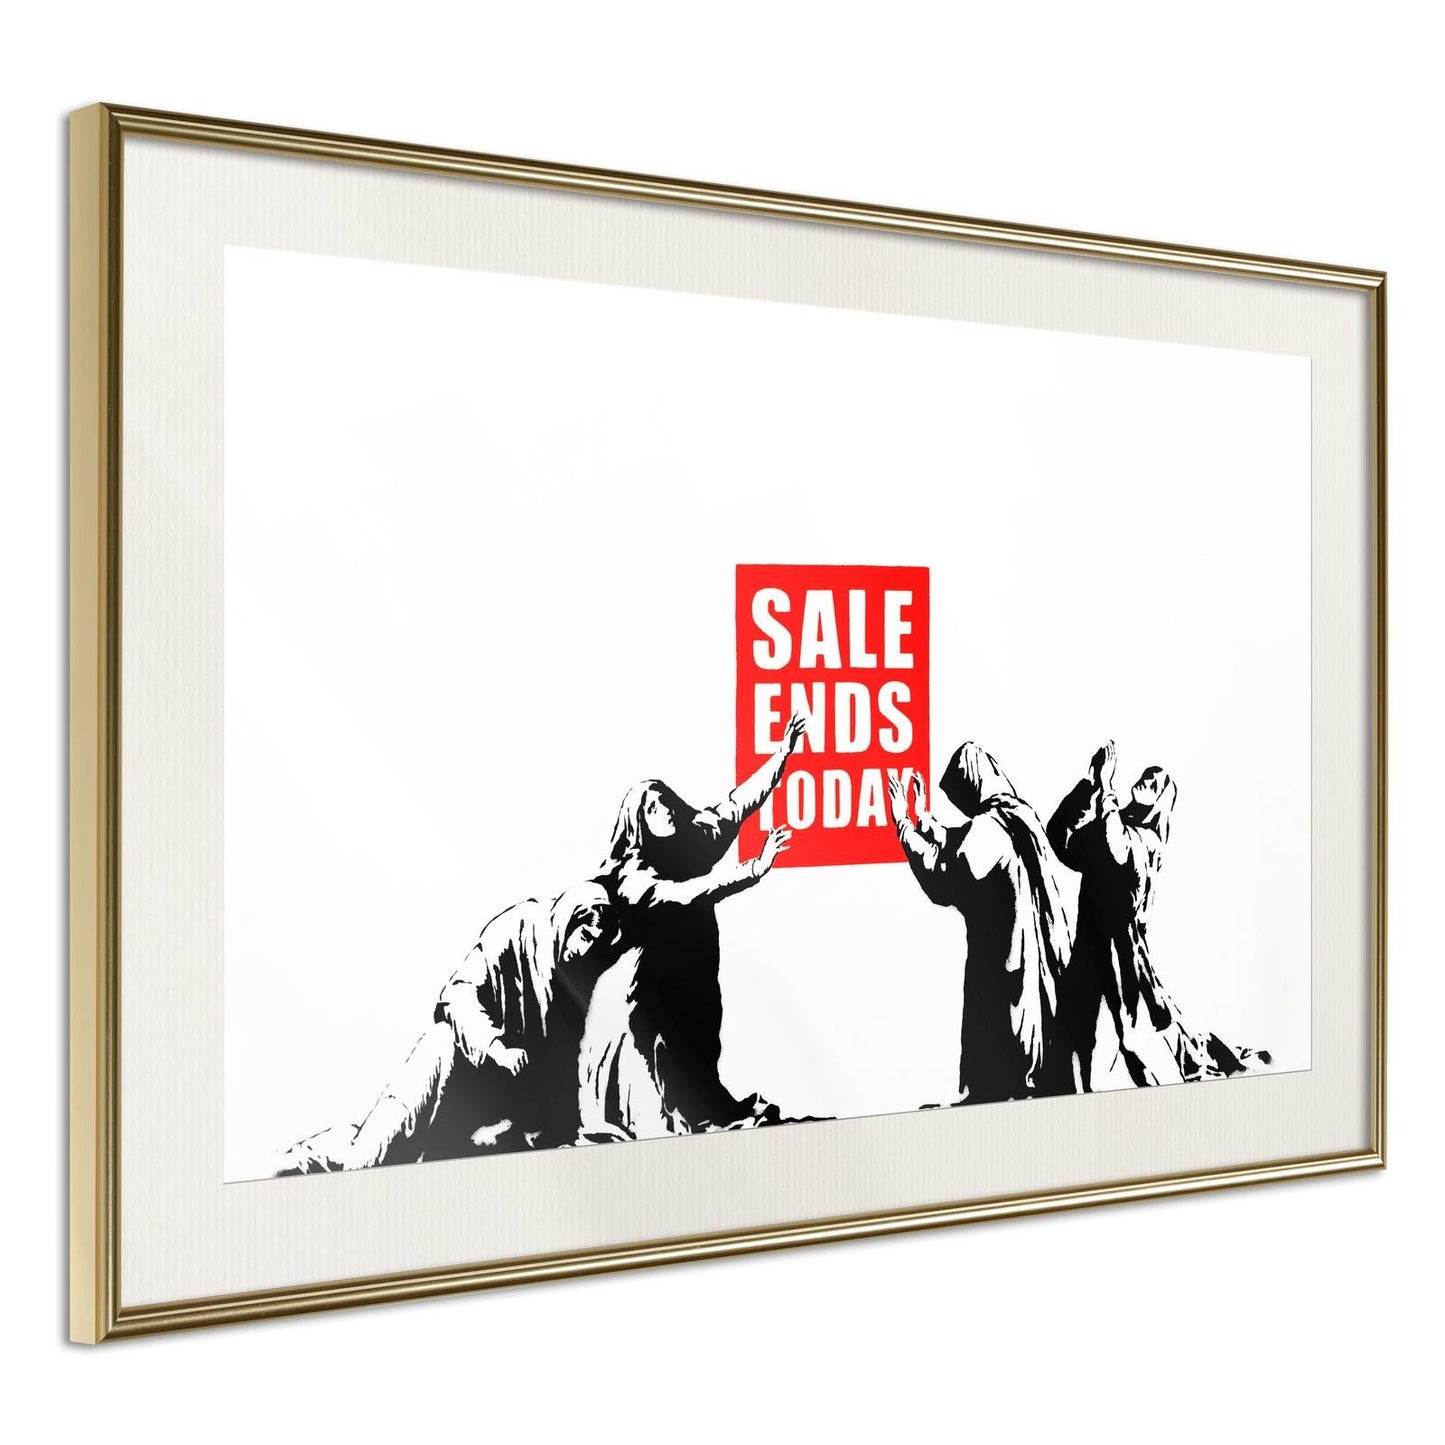 Banksy: Verkauf endet